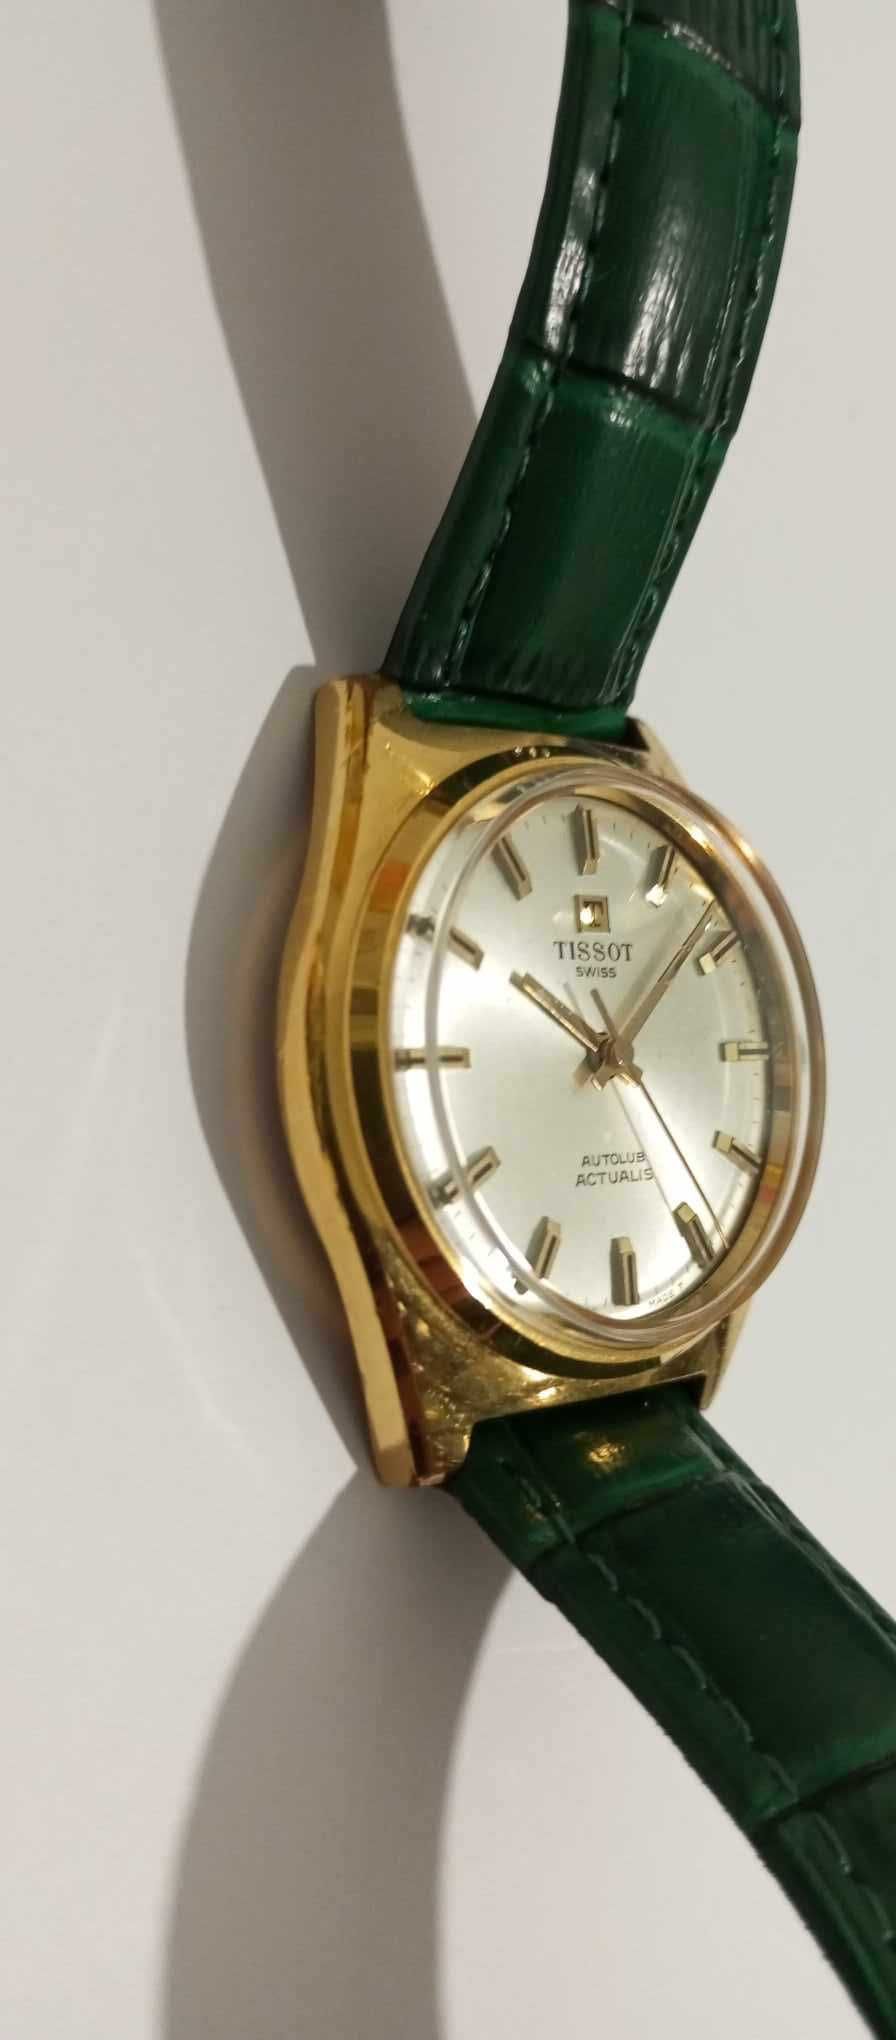 Raríssimo relógio Tissot actualis vintage (anos 70)